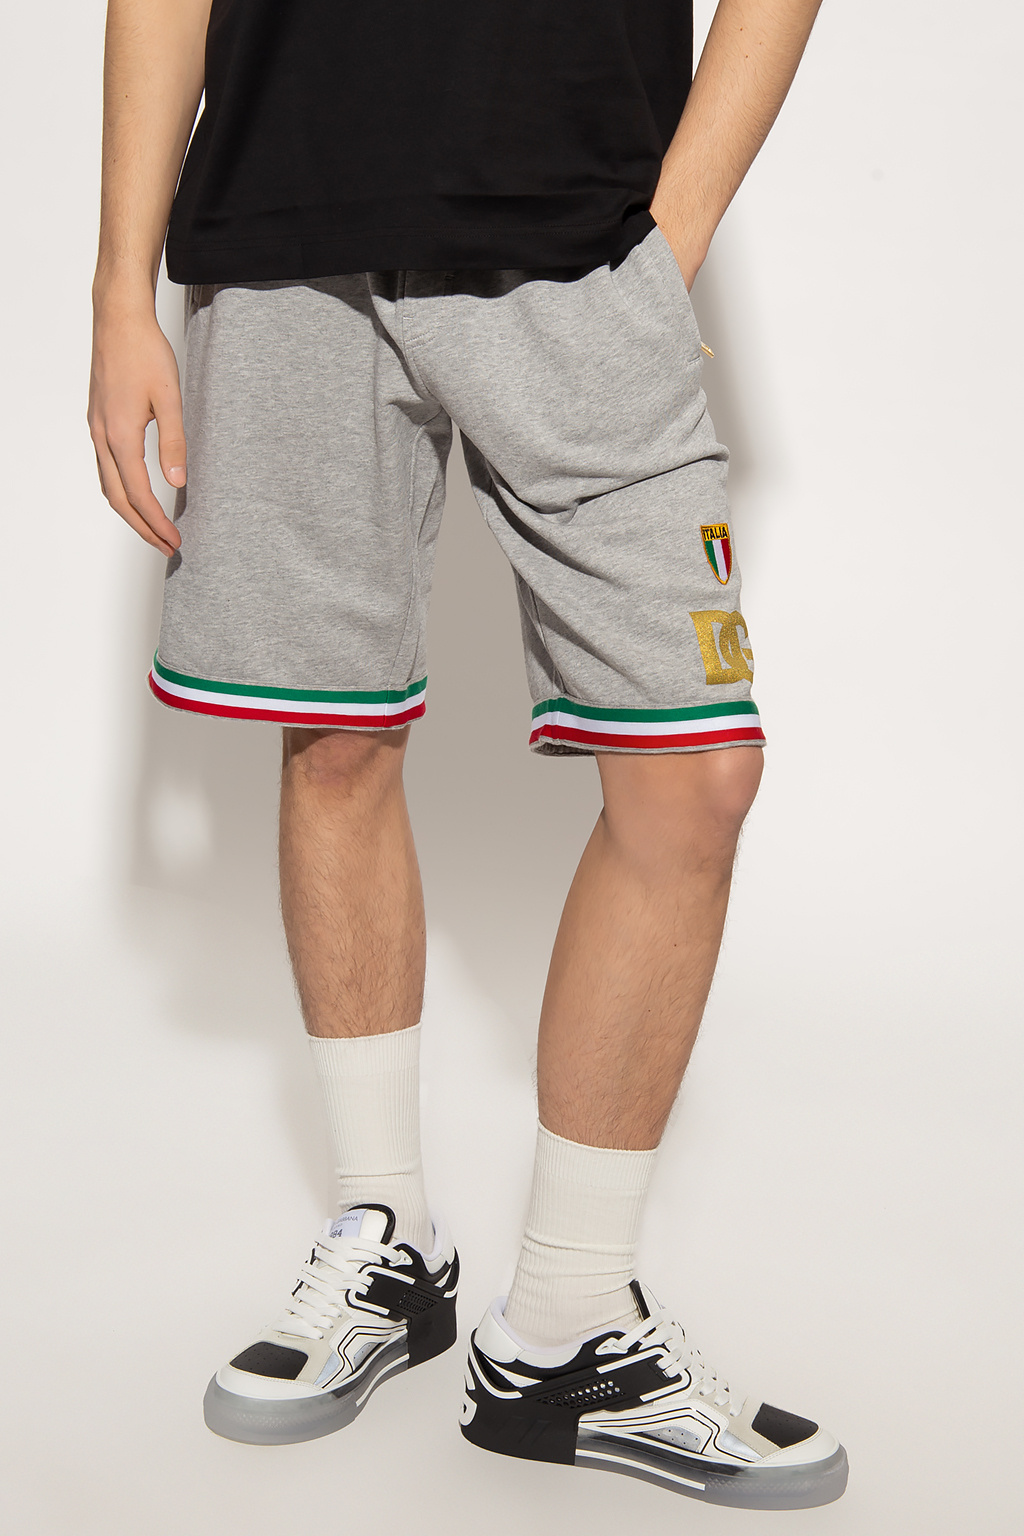 Dolce & Gabbana Shorts with logo